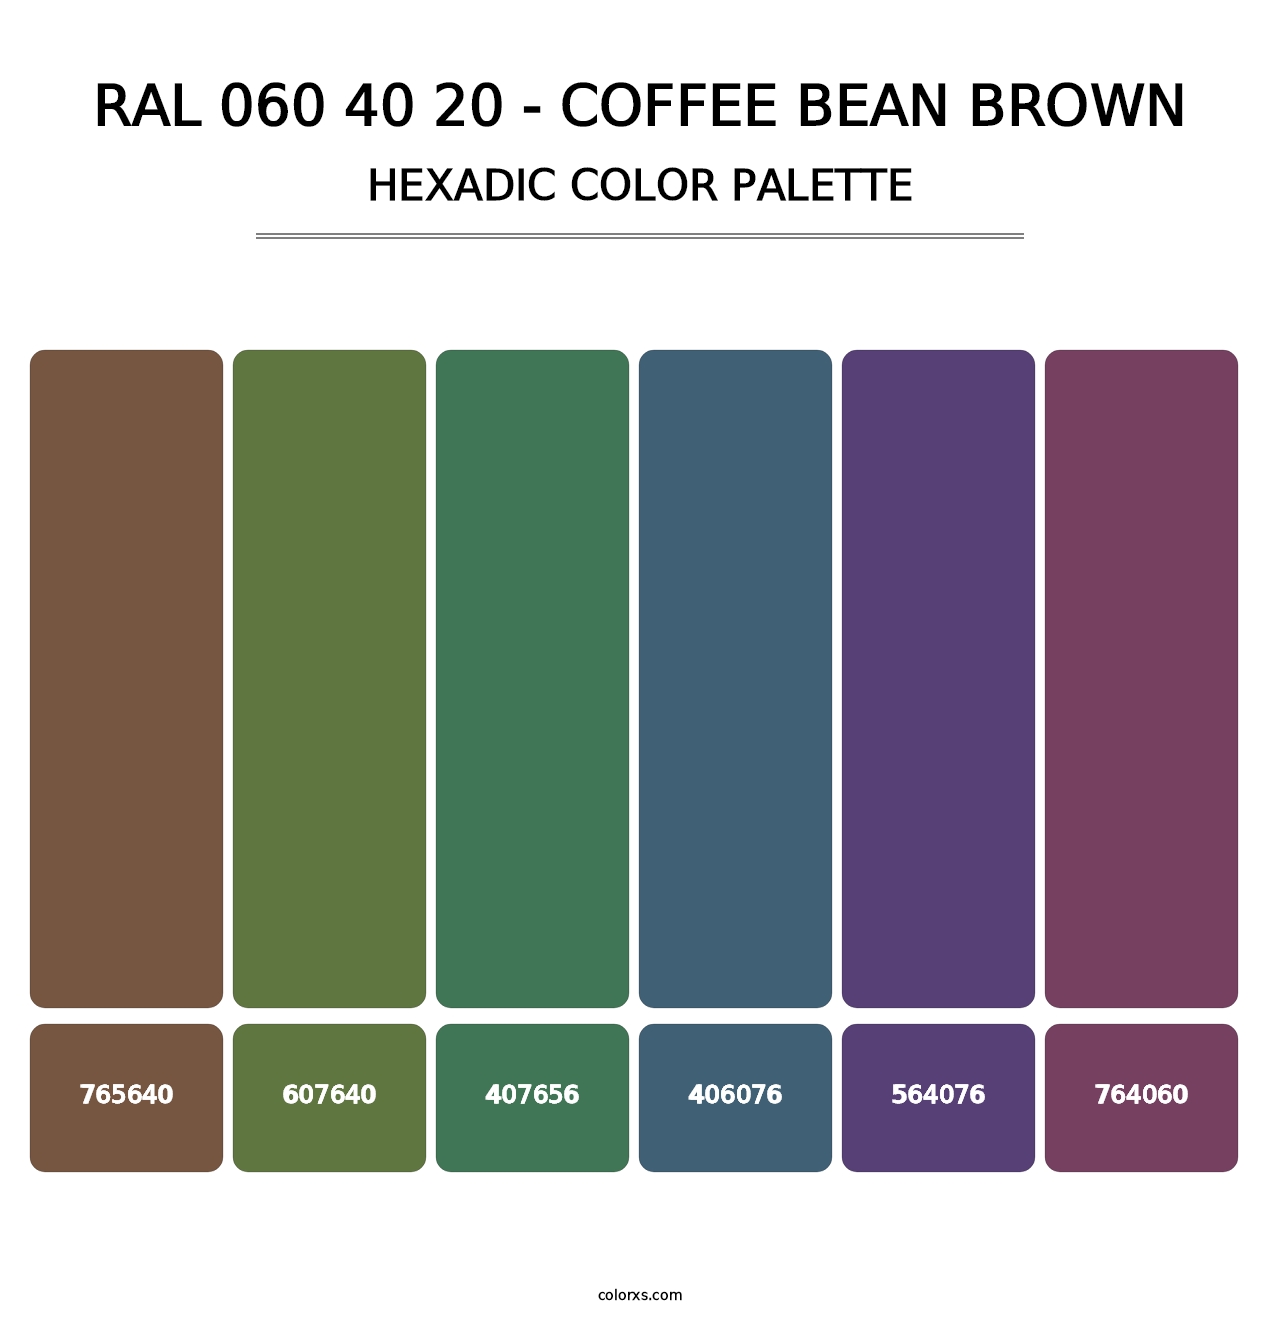 RAL 060 40 20 - Coffee Bean Brown - Hexadic Color Palette